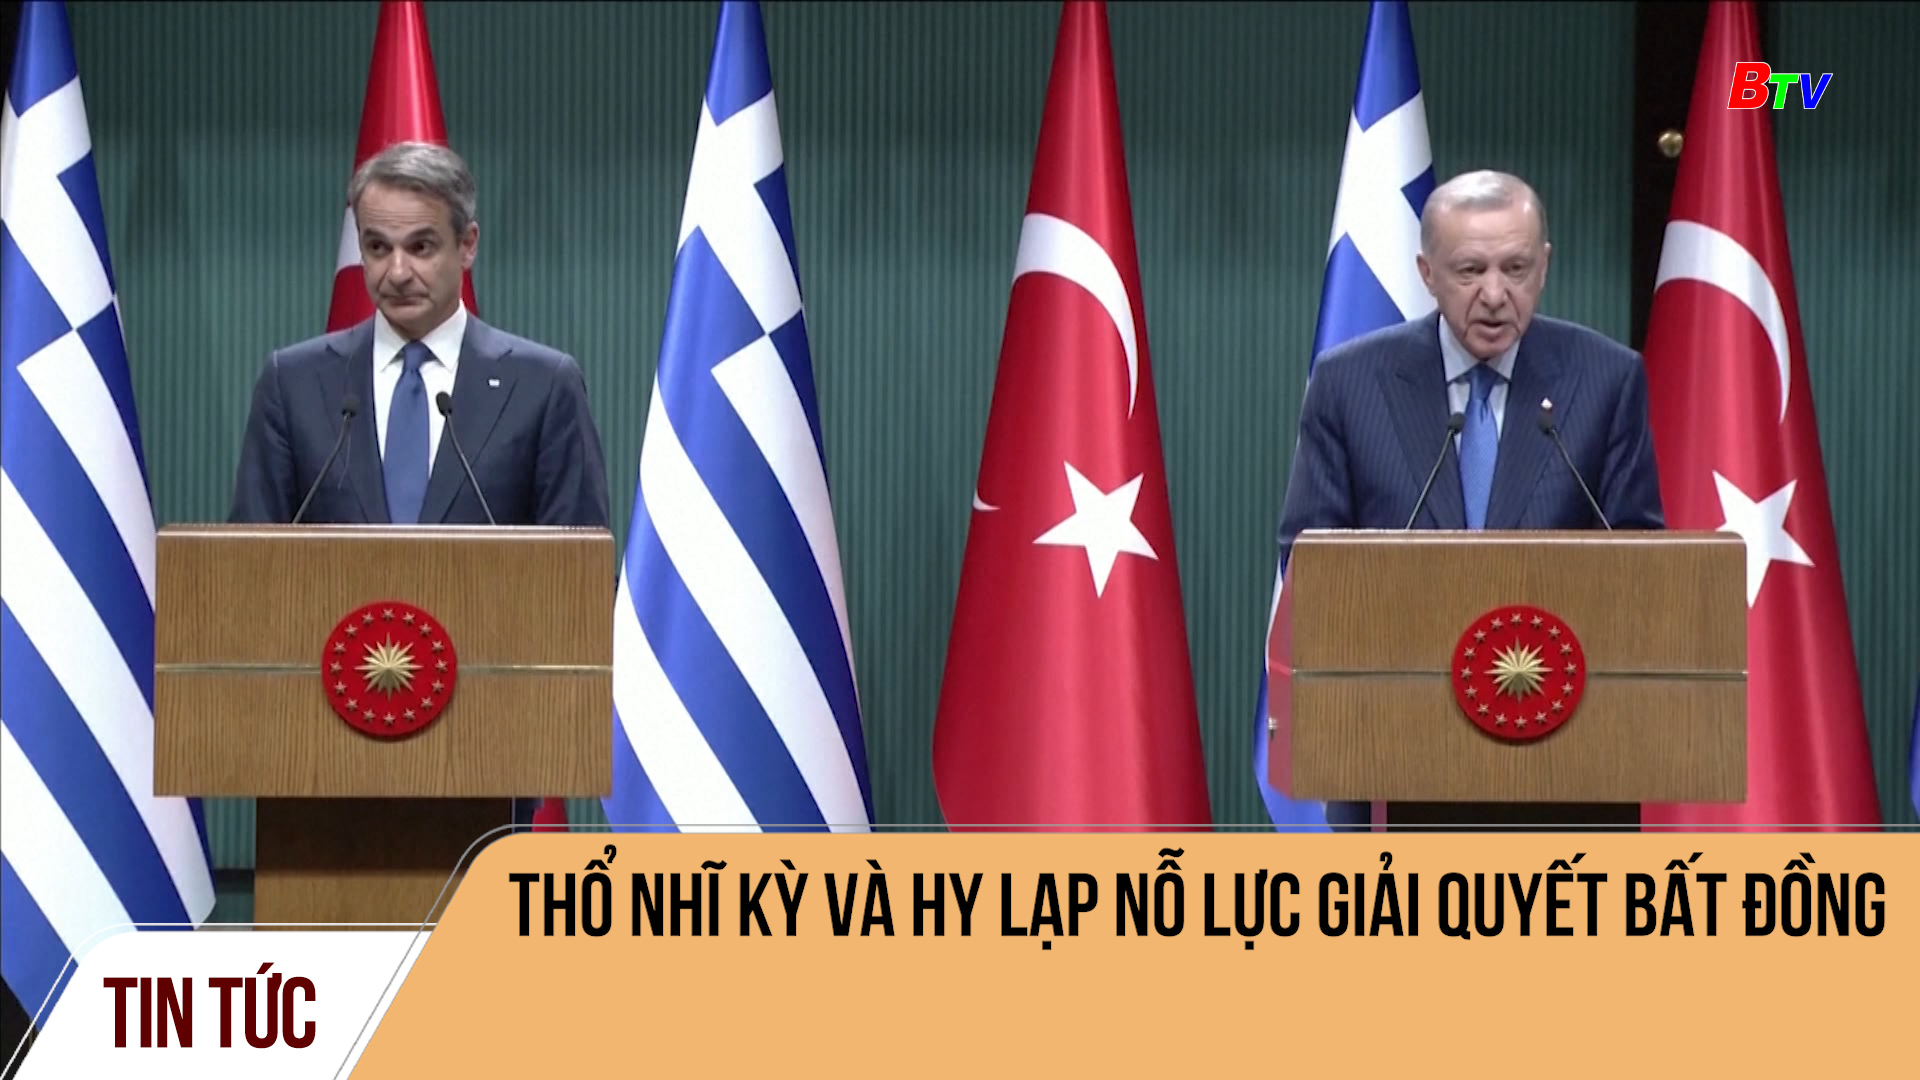 Thổ Nhĩ Kỳ và Hy Lạp nỗ lực giải quyết bất đồng